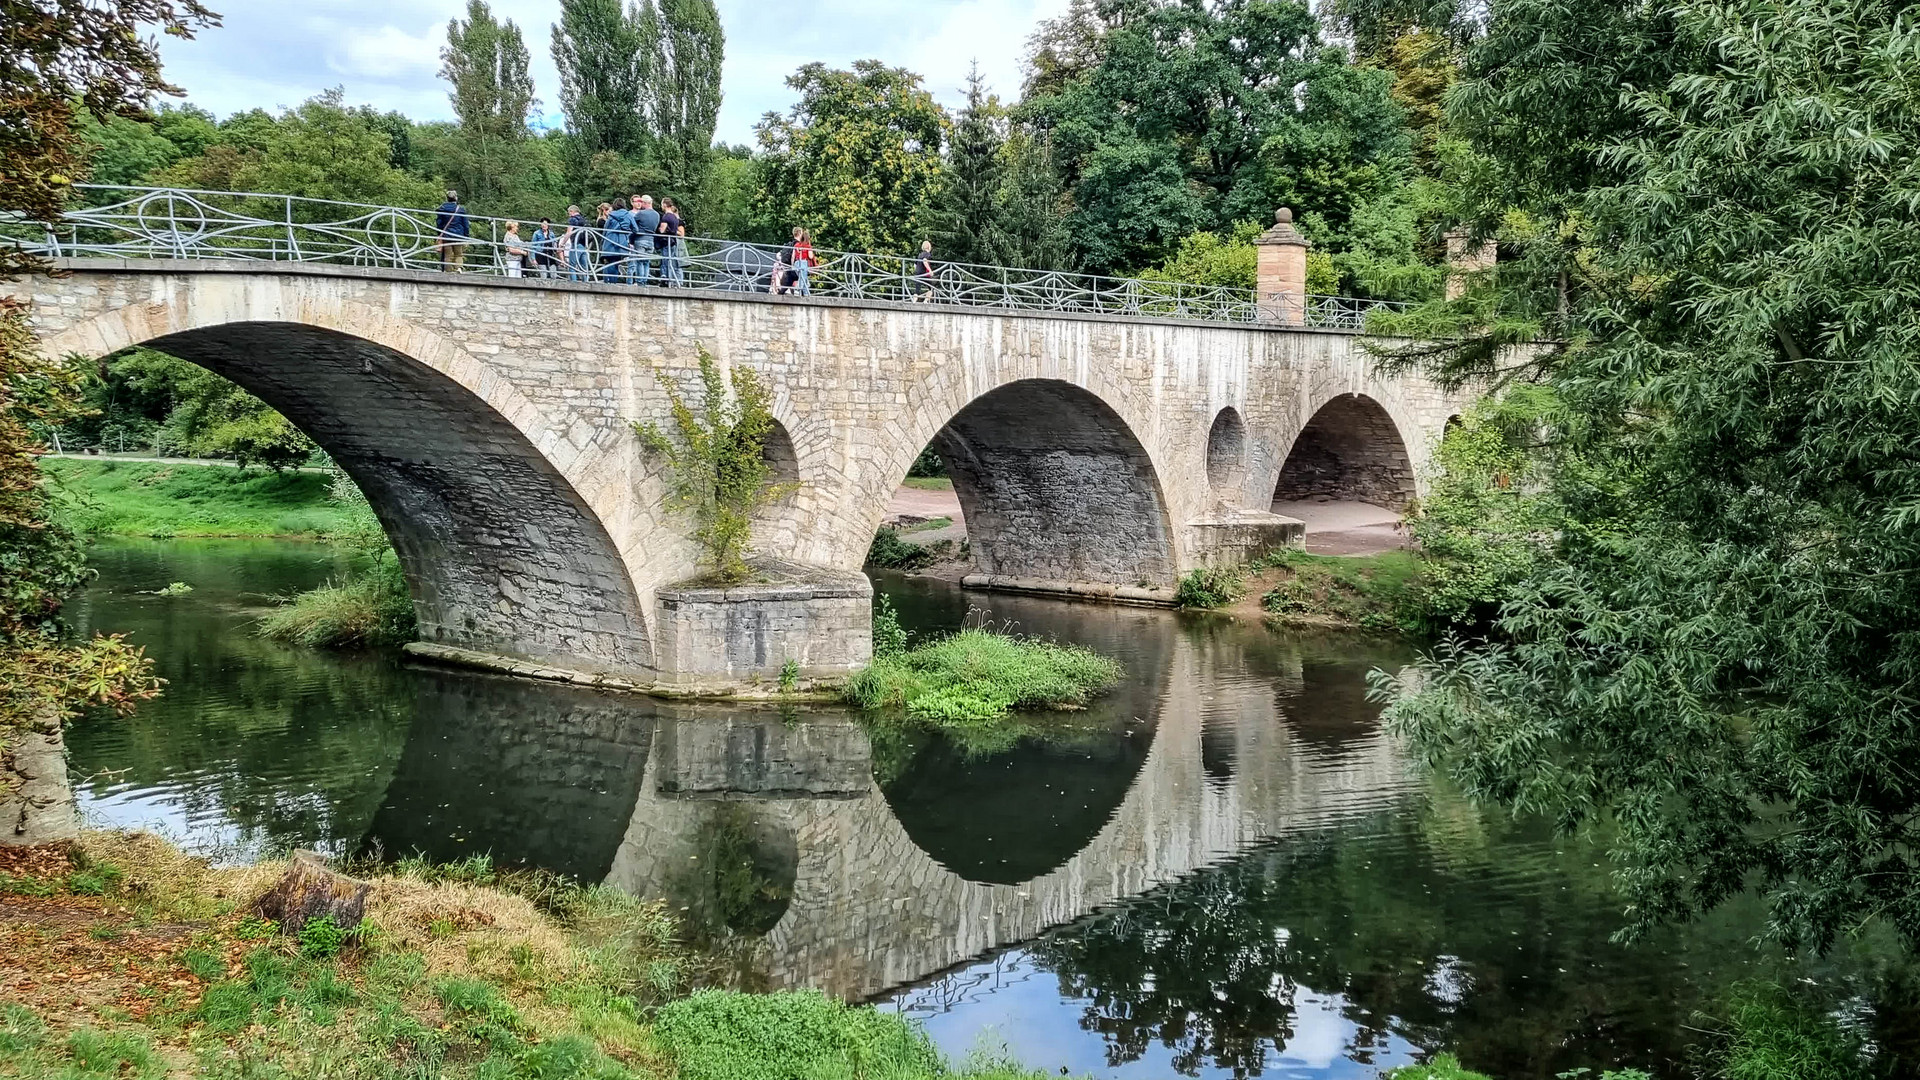 Sternbrücke in Goethes Park an der Ilm